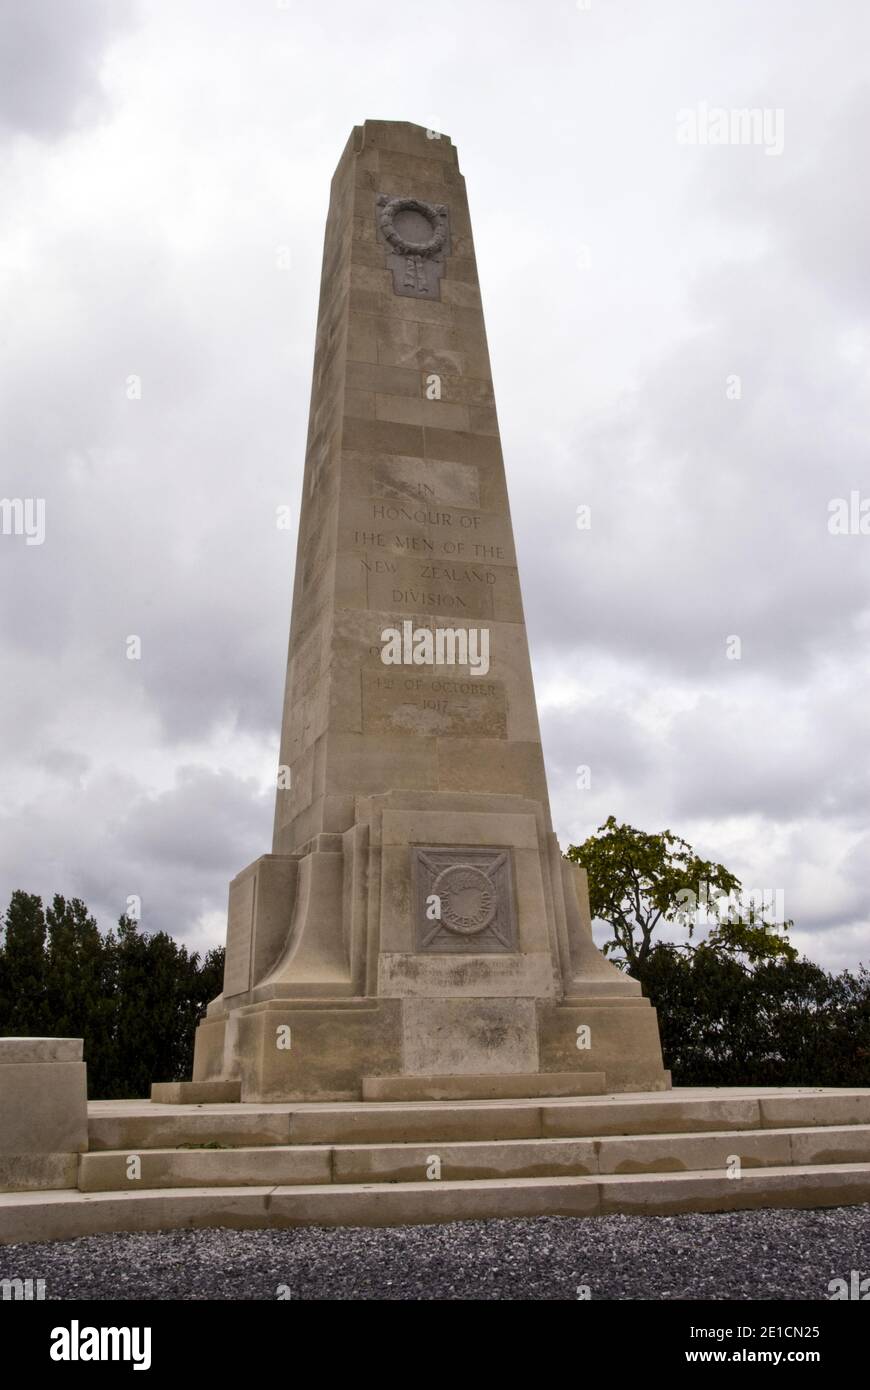 Le monument de la division de Nouvelle-Zélande à Zonnebeke, près d'Ypres, dédié à la division de Nouvelle-Zélande qui a combattu pendant la bataille de Broodseinde, 1917. Banque D'Images